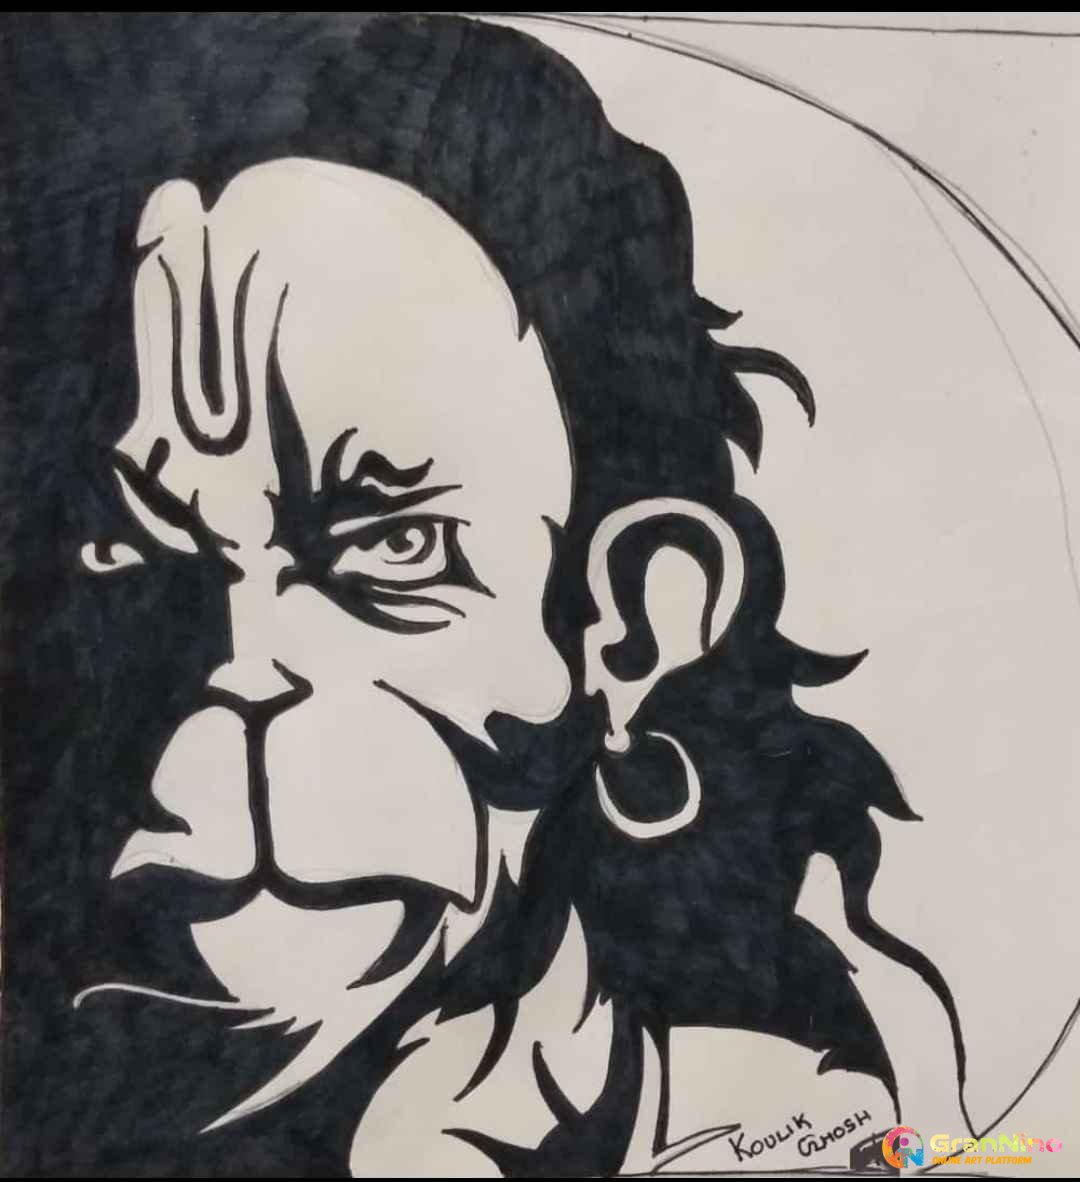 easy hanuman ji drawing/ Hanuman jayanti special drawing / Hanuman ji ki  drawing Lavi Arts - YouTube